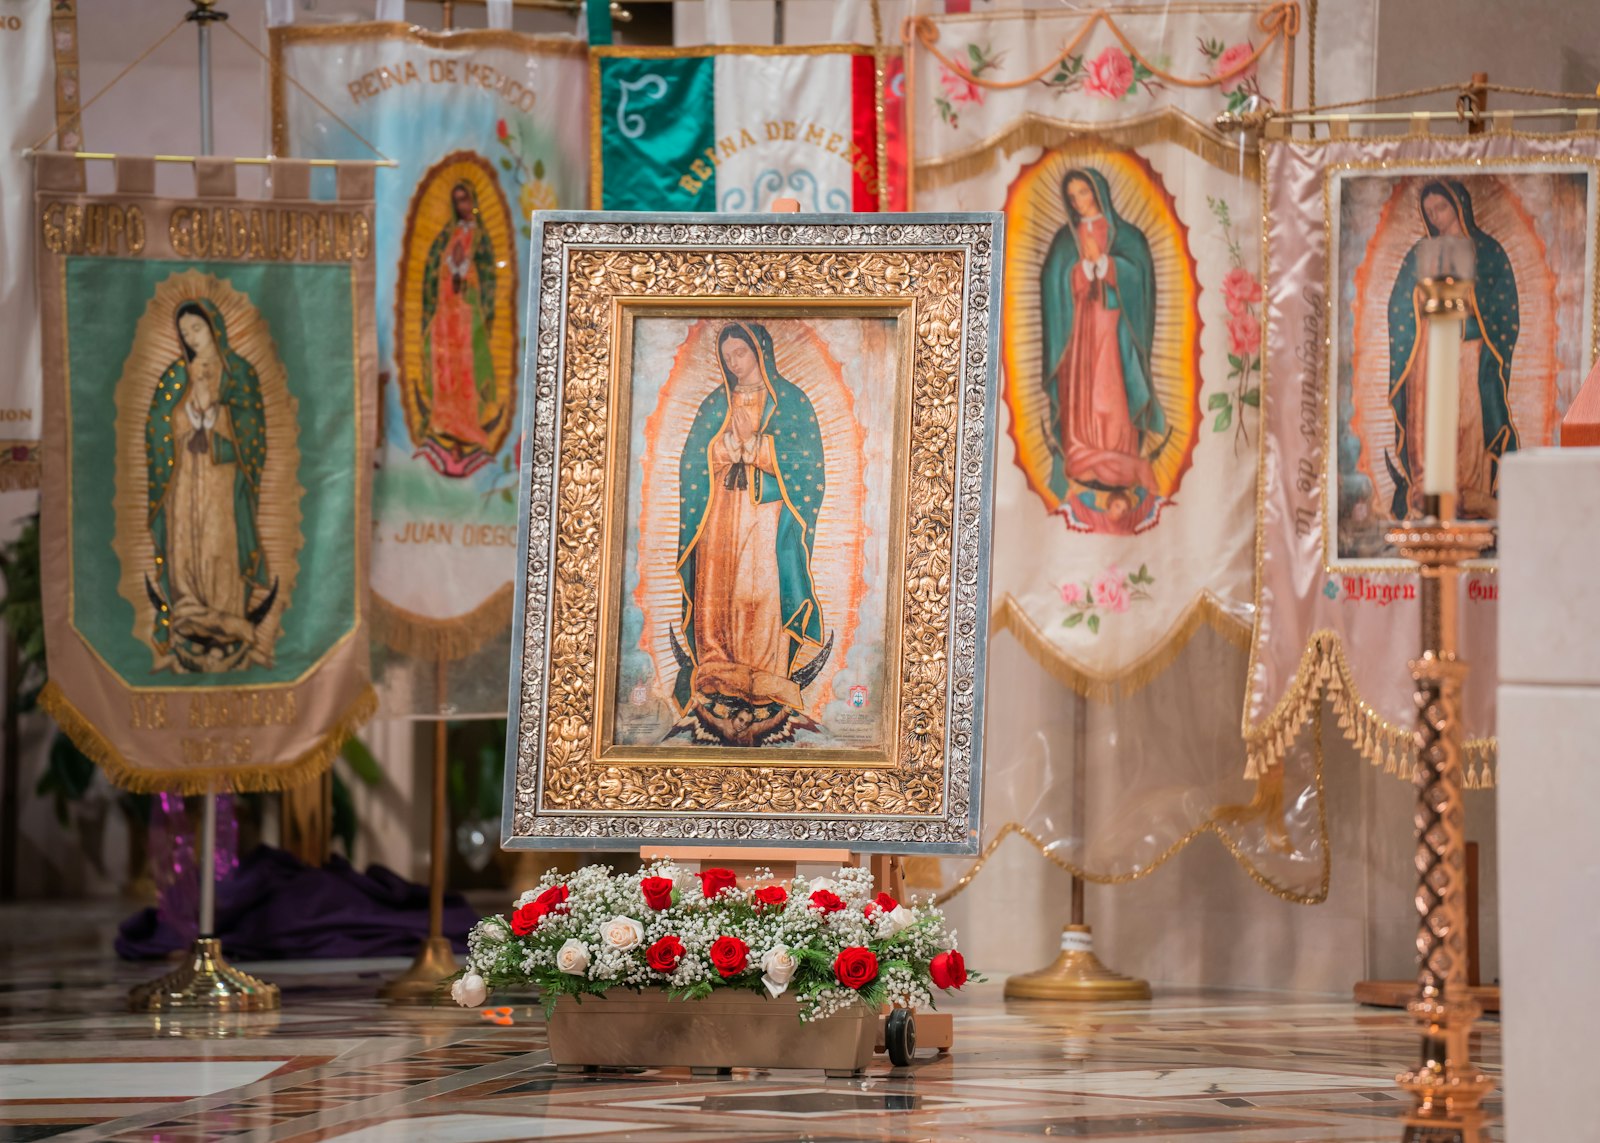 En esta celebración anual, se erige un altar dedicado a la Virgen de Guadalupe. La imagen, que es adornada con flores, proviene de la Basílica de México, recreando una atmósfera de la fiesta que se vive al pie del Cerro del Tepeyac.